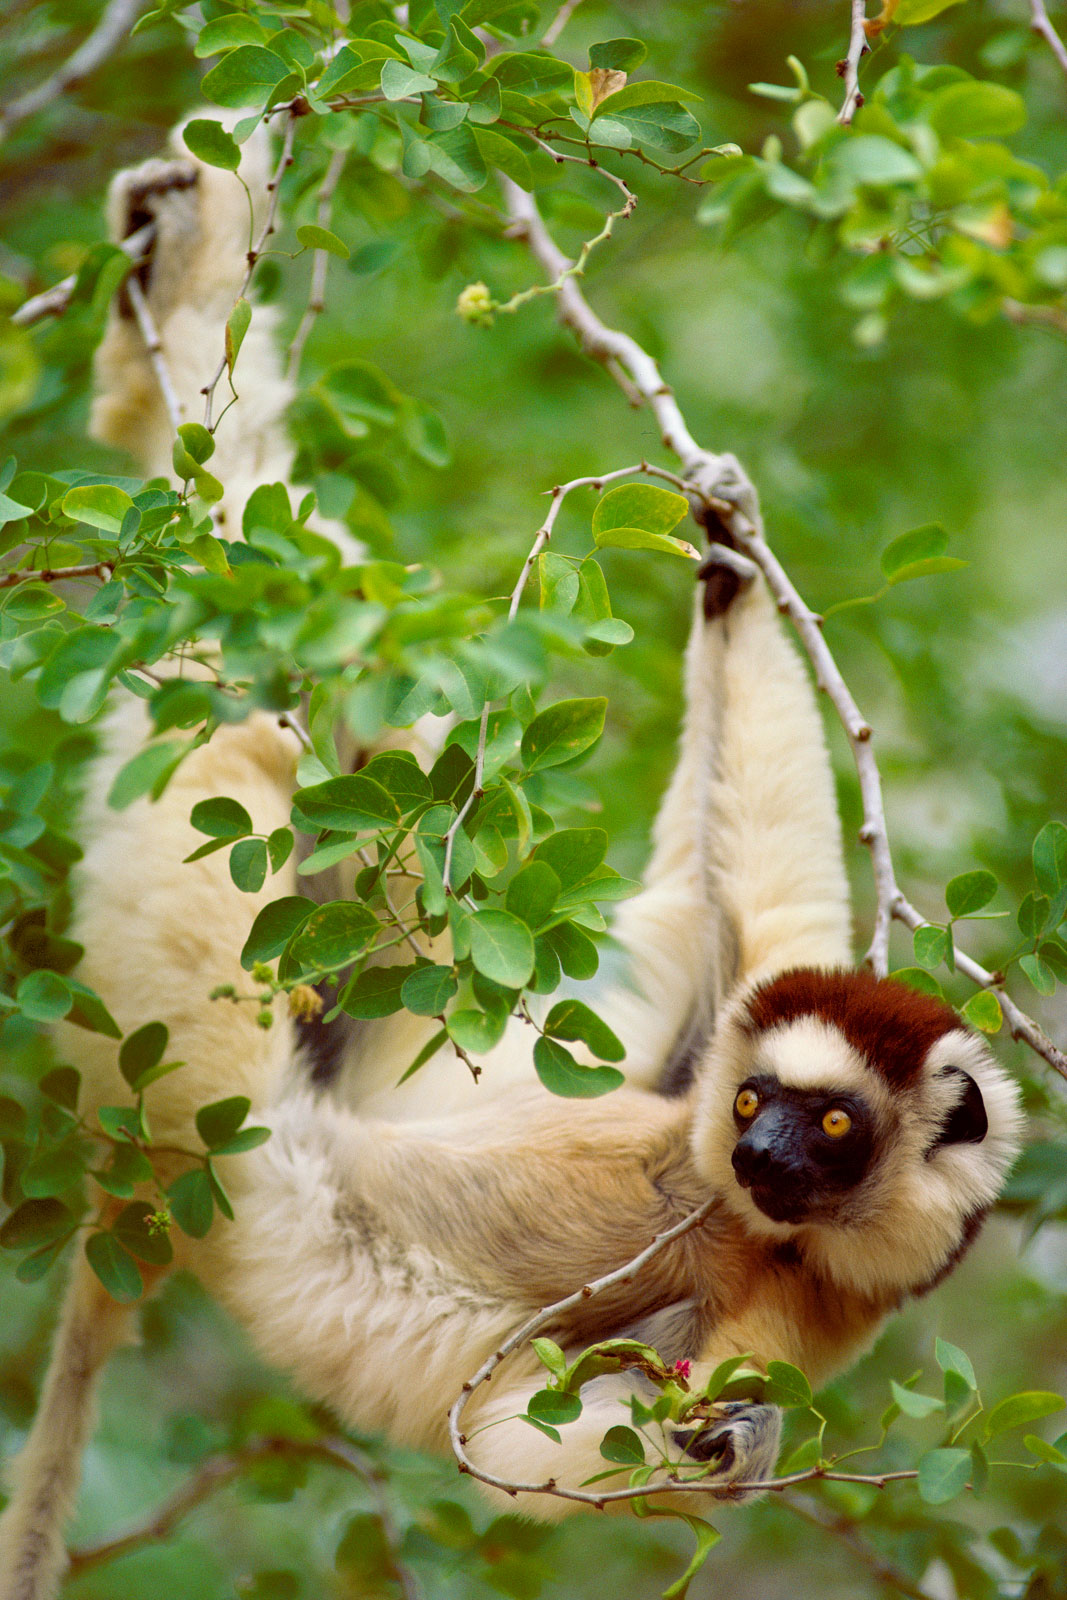 Verreaux's sifaka in tree, Beza Mahafaly Special Reserve, Madagascar